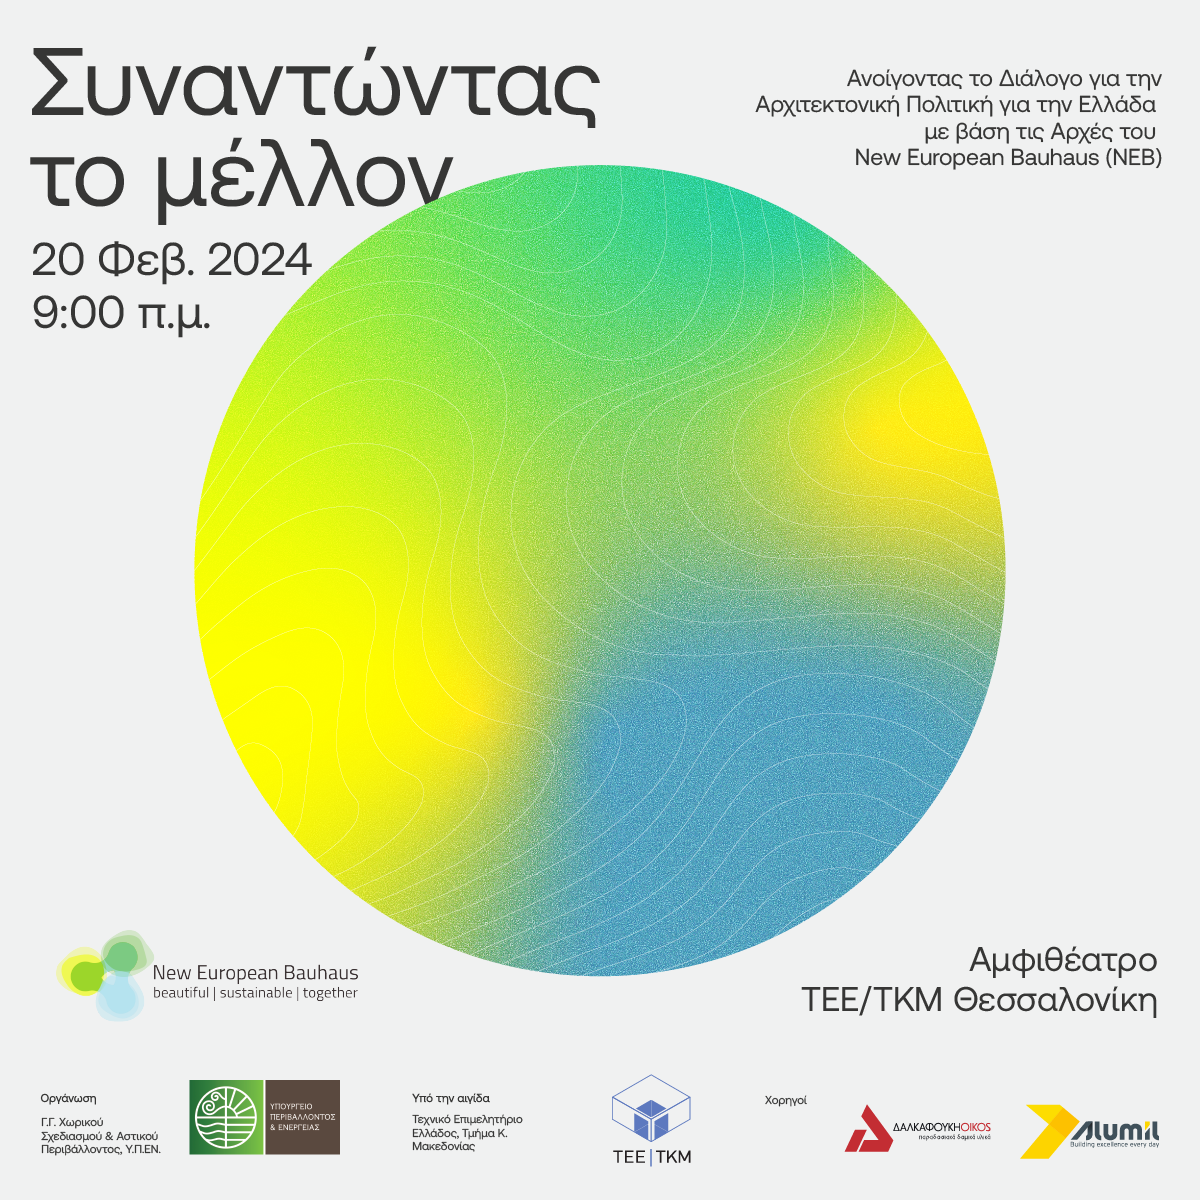 Εκδήλωση: “Συναντώντας το μέλλον: Ανοίγοντας τον διάλογο για την αρχιτεκτονική πολιτική για την Ελλάδα με βάση τις αρχές του Νέου Ευρωπαϊκού Bauhaus (NEB)”, Αμφιθέατρο Τεχνικού Επιμελητηρίου Ελλάδας (ΤΕΕ/ΤΚΜ) Θεσσαλονίκη, 20 Φεβρουαρίου 2024